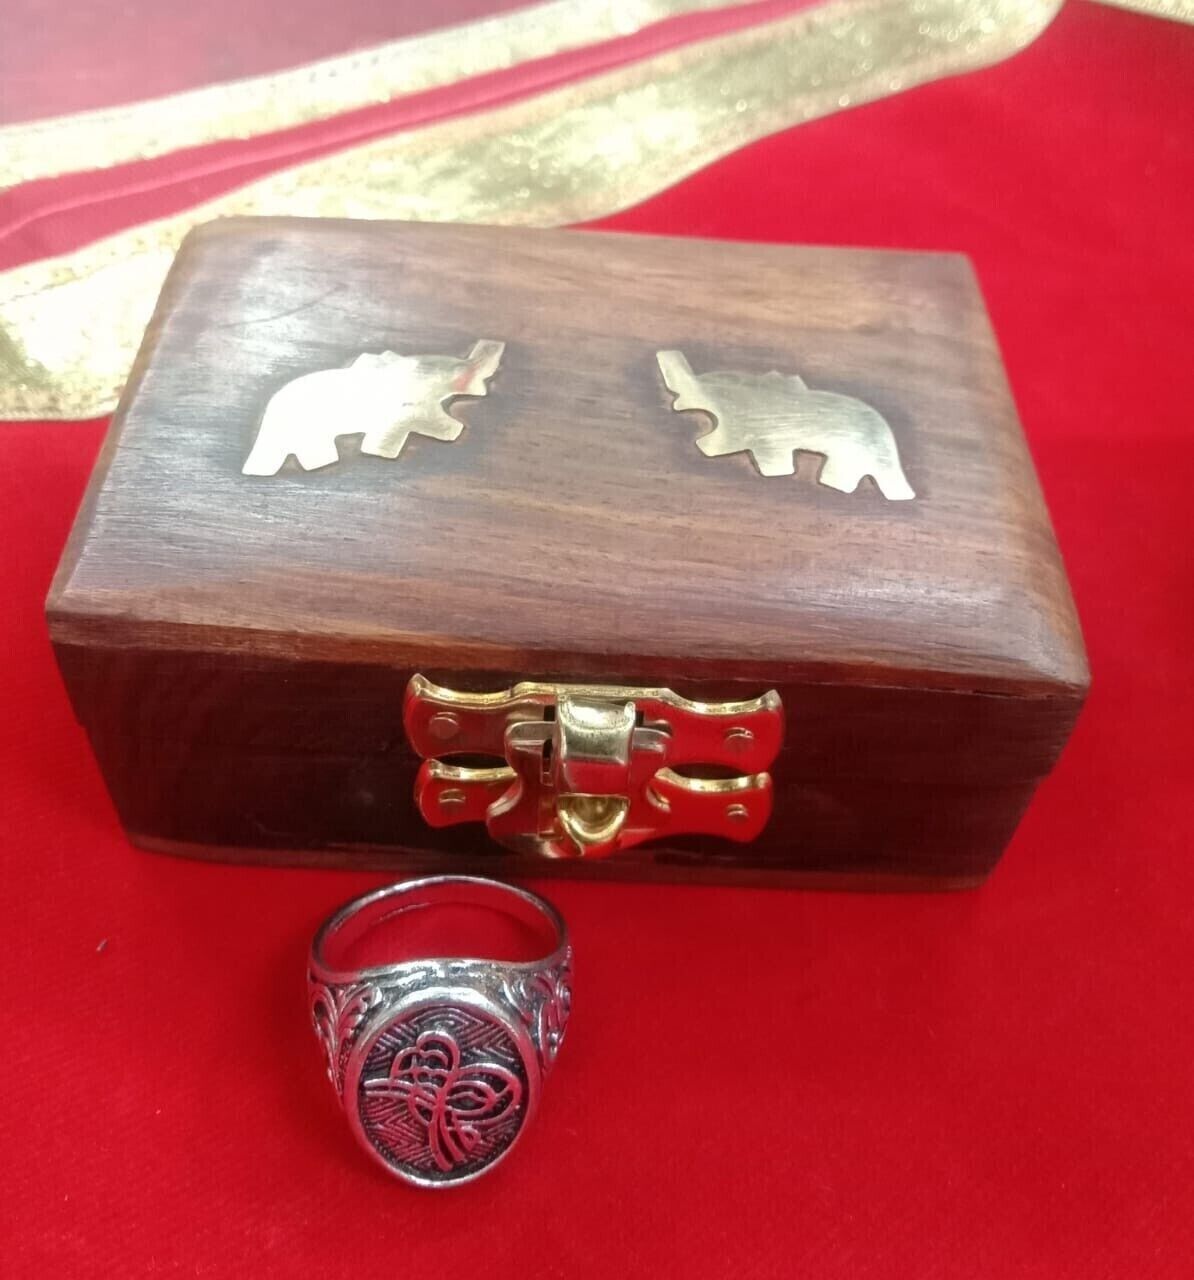 Aghori Made Maha Tantra Crematorium Mahakal Ring+ /Black Magic Protection Win+